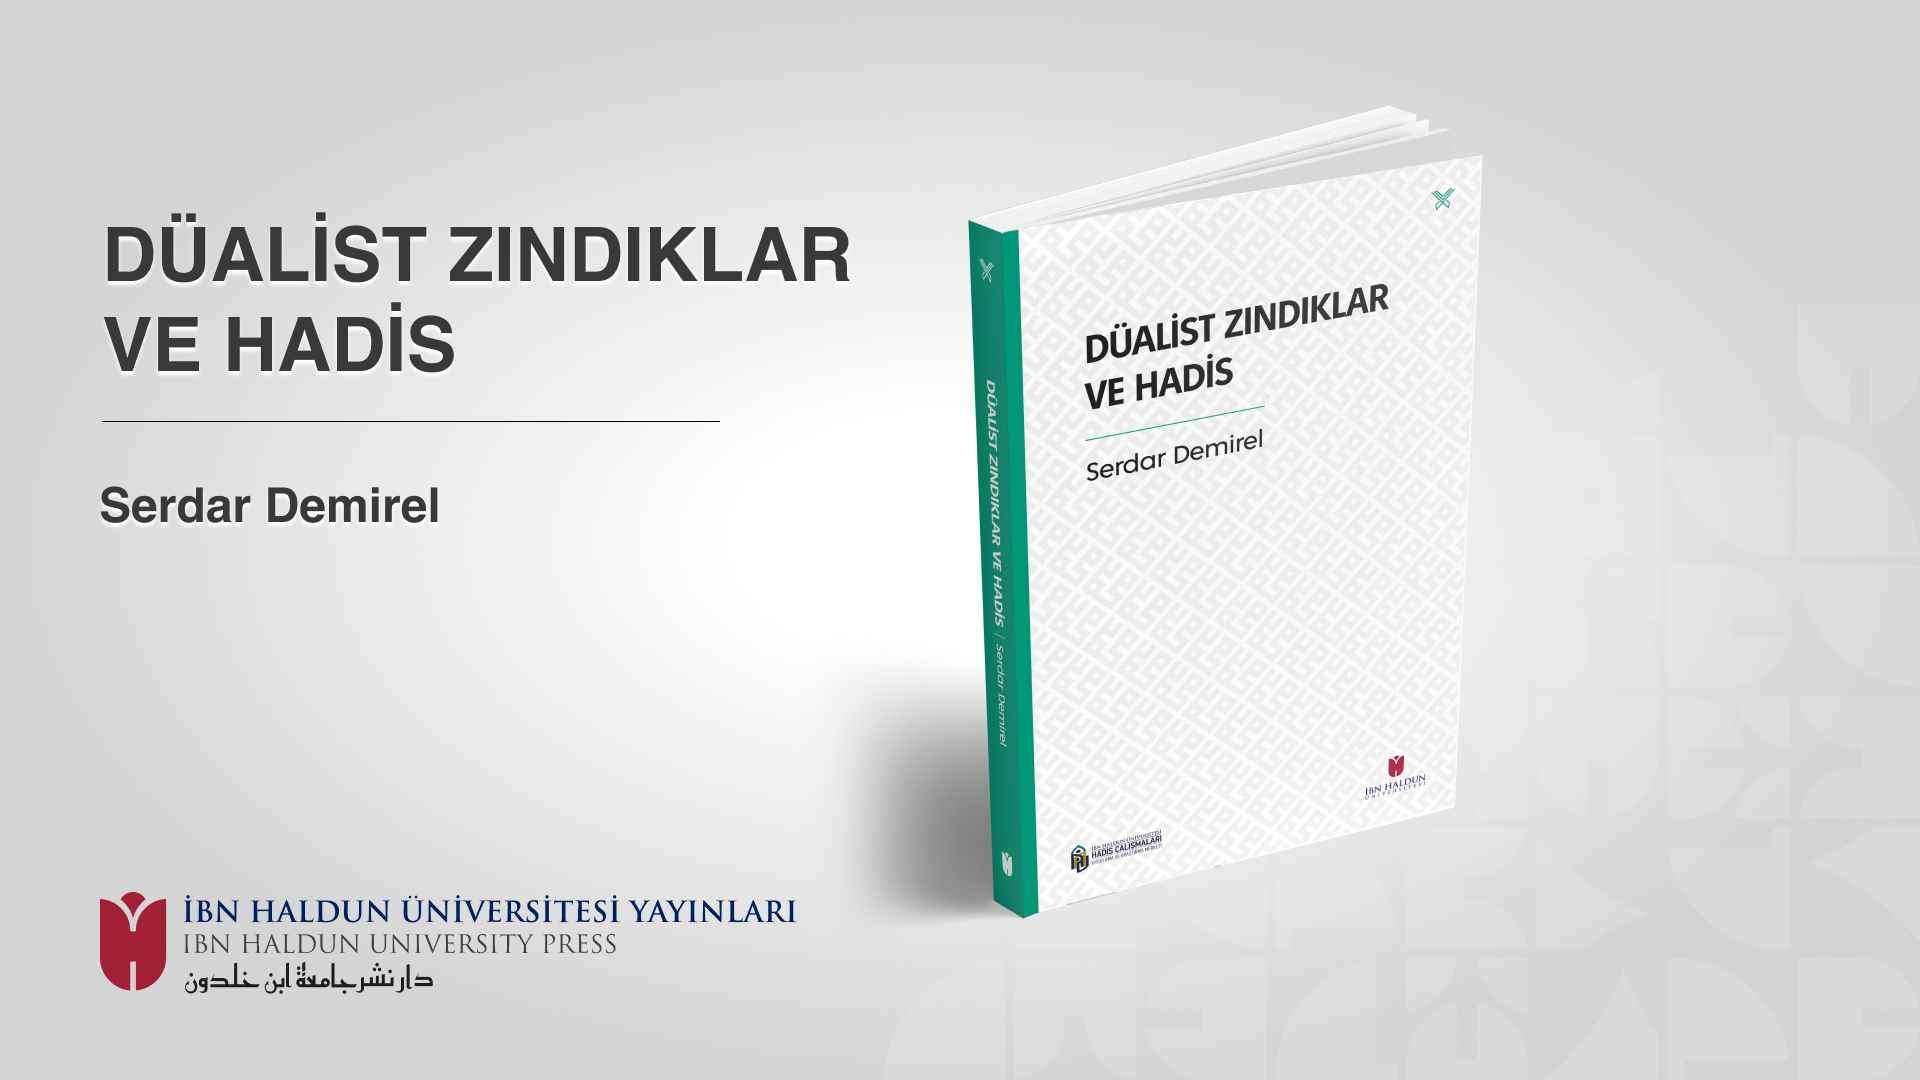 İbn Haldun Üniversitesi Yayınları’ndan İslami İlimler Alanında İki Yeni Kitap